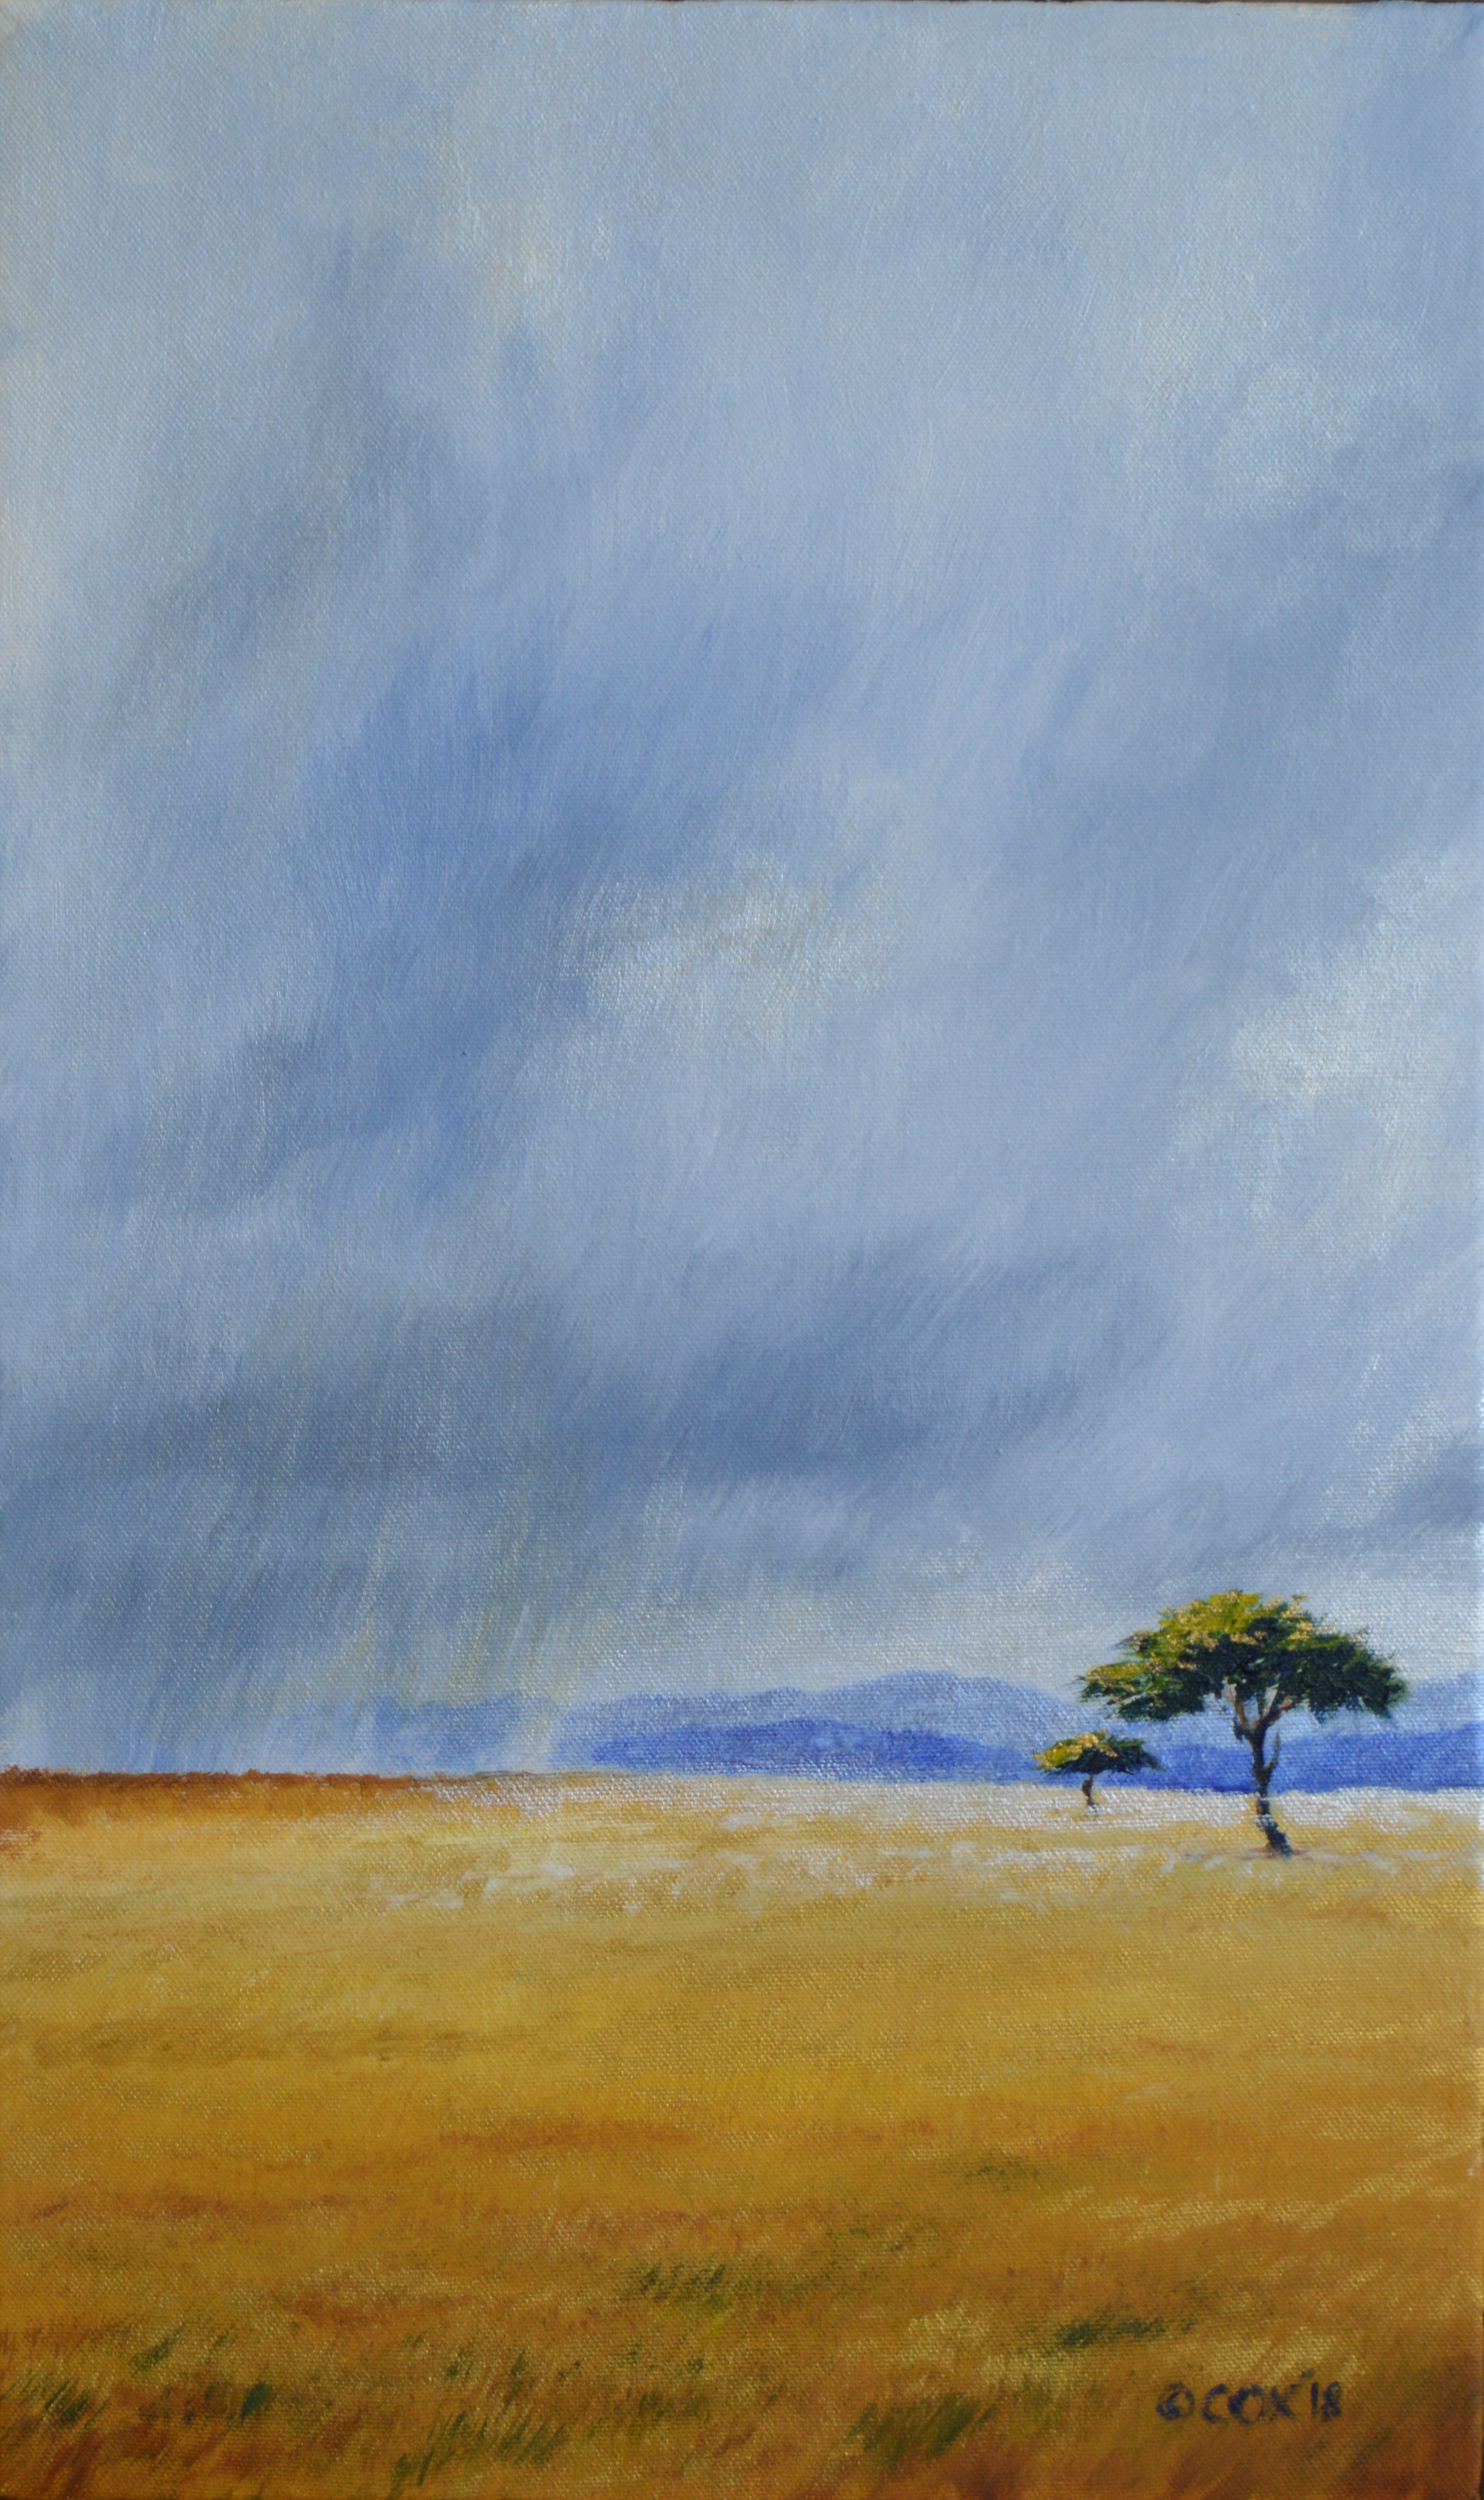 'Mara Rains', acrylic on canvas, 20x12"